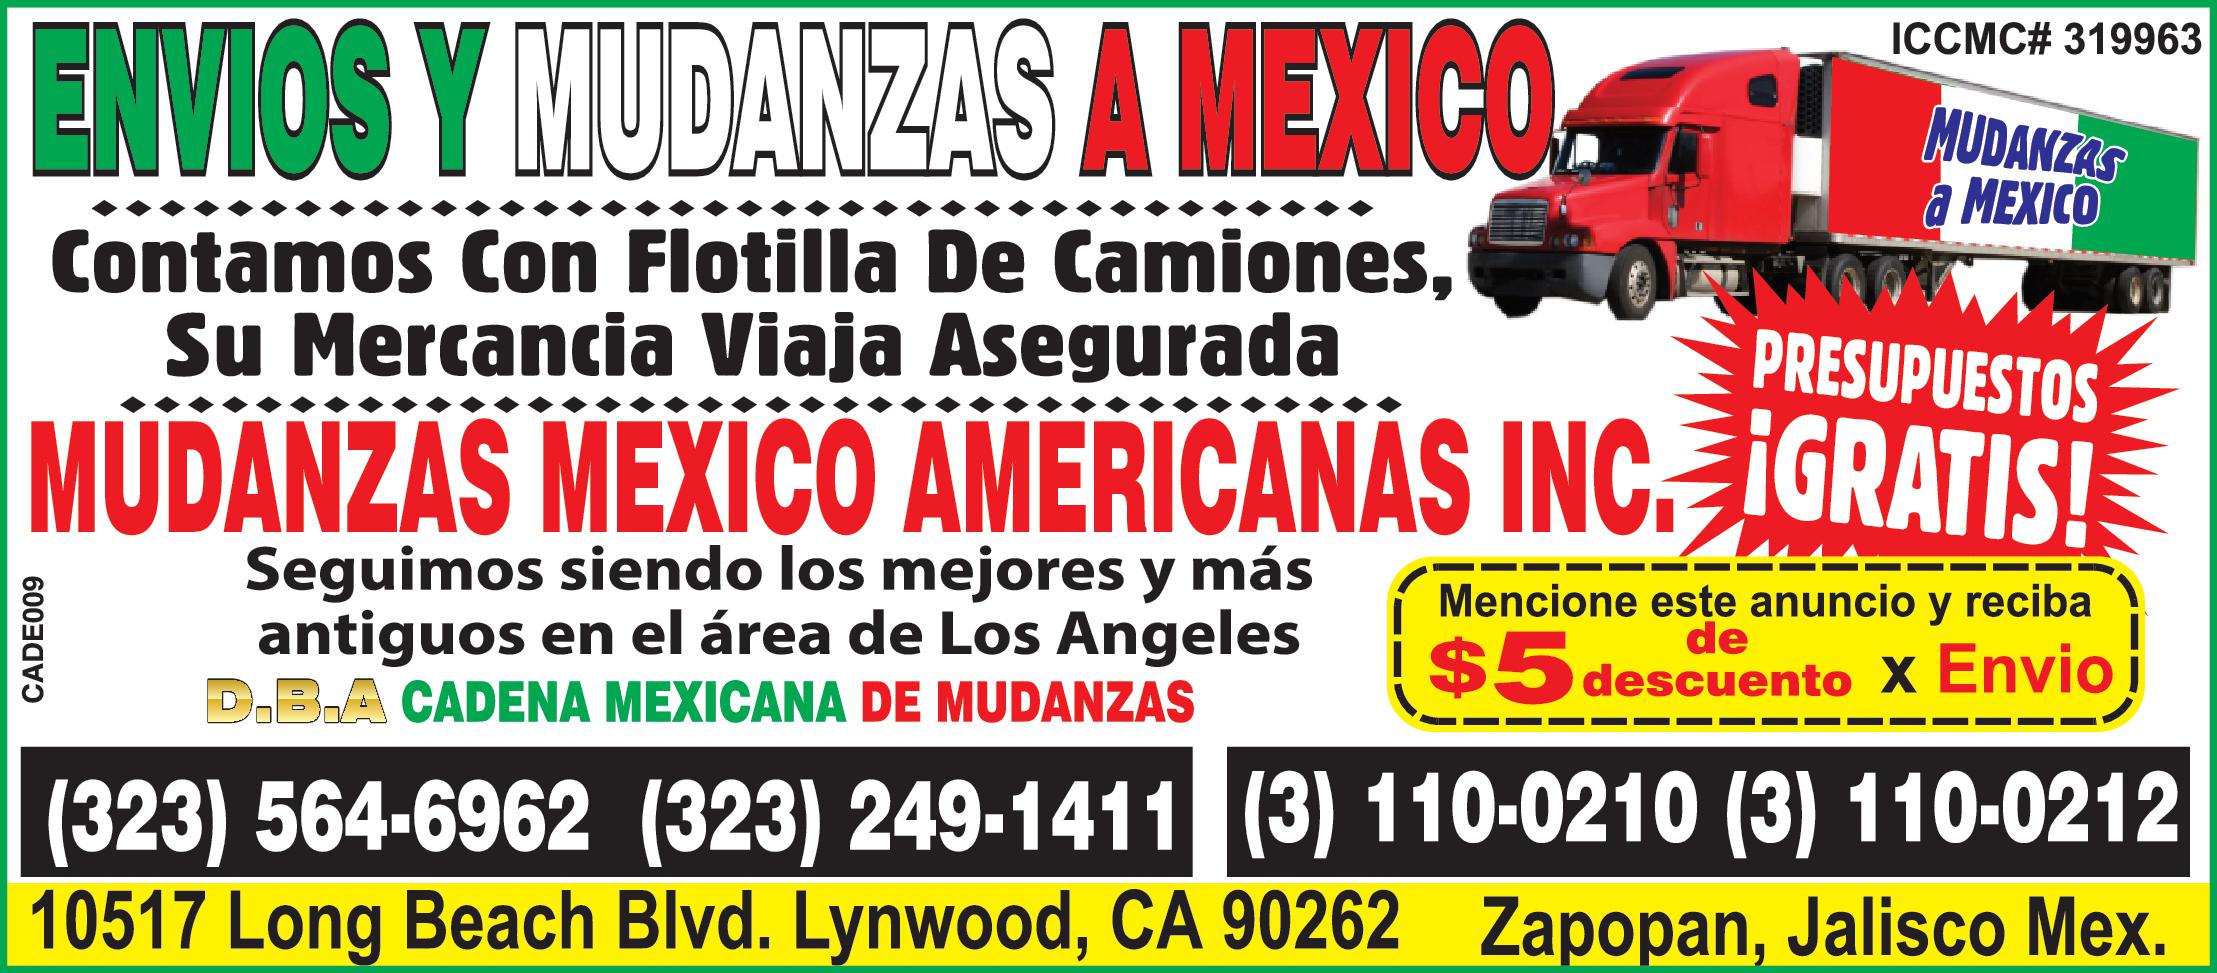 ENVIOS MUDANZAS MEXICO Contamos Con Flotilla De Camiones Su Mercancia Viaja Asegurada MUDANZAS MEXICO www PRESUPUESTOS MUDANZAS MEXICO AMERICANAS INC IGRATIS CADE009 ICCMC 319963 Seguimos siendo los mejores más antiguos en el área de Los Angeles D.B.A CADENA MEXICANA DE MUDANZAS Mencione este anuncio reciba descuento Envio 323 564-6962 323 249-1411 110-0210 110-0212 10517 Long Beach Blvd. Lynwood CA 90262 Zapopan Jalisco Mex